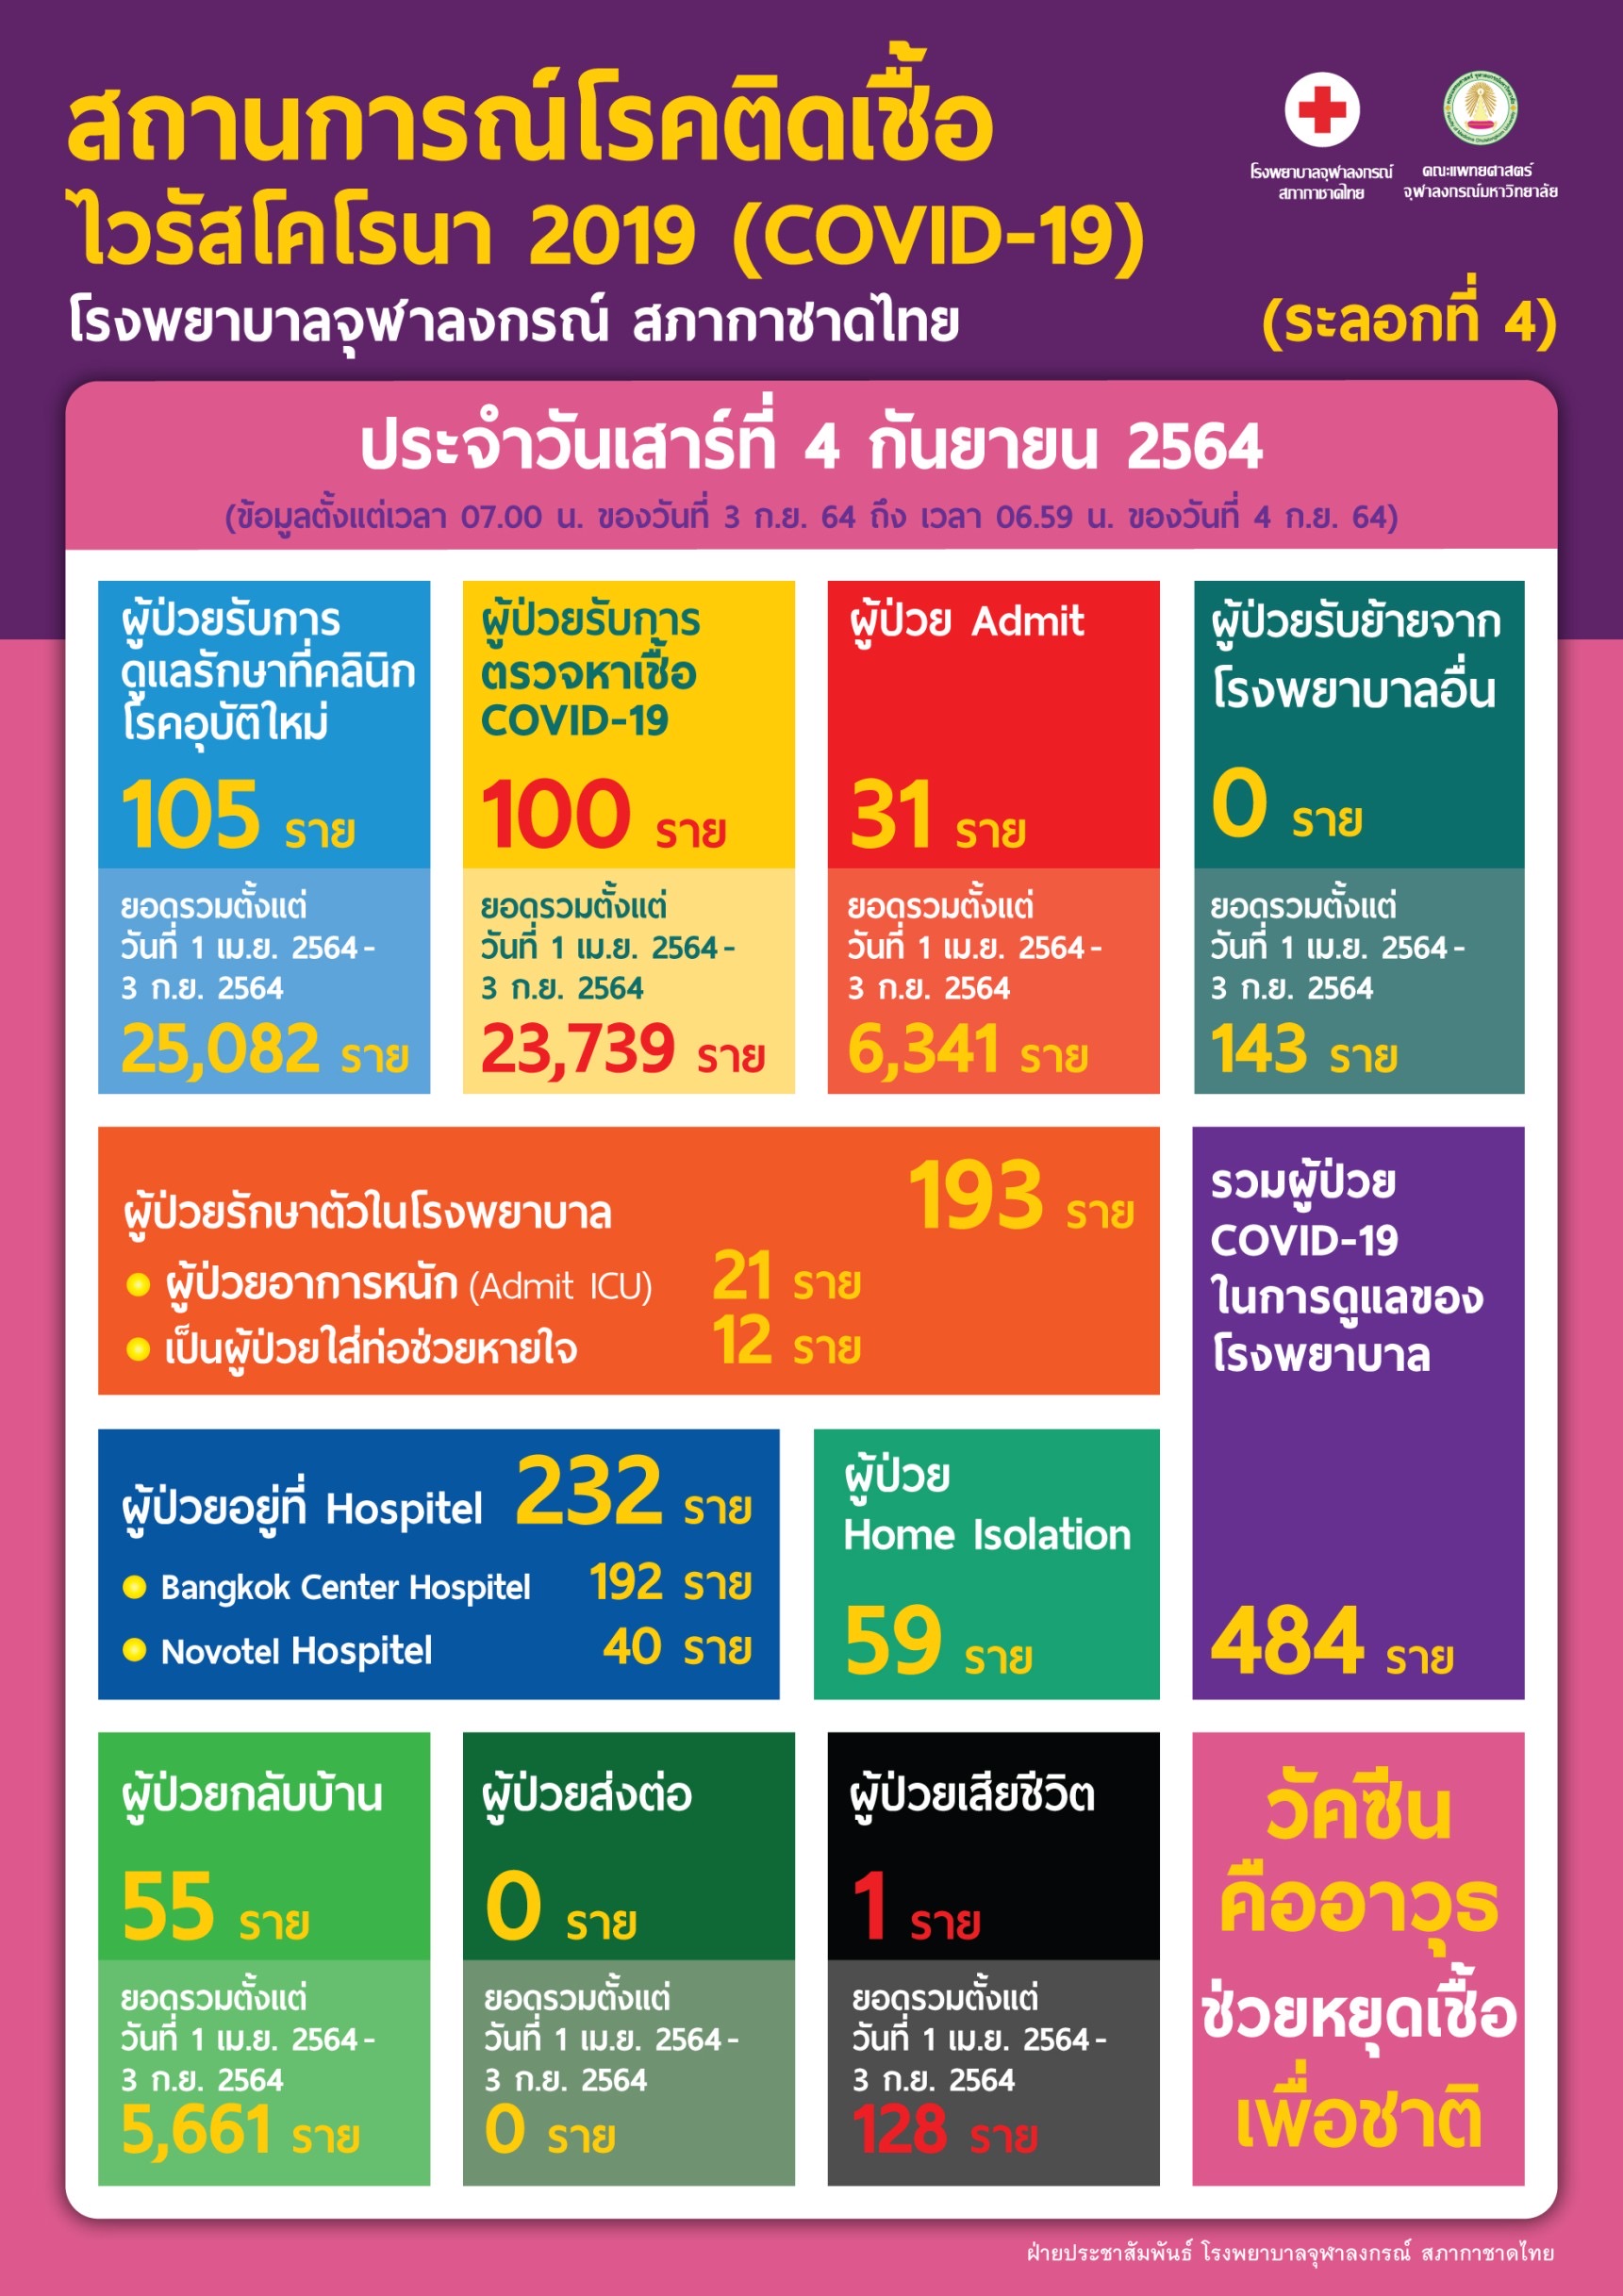 สถานการณ์โรคติดเชื้อไวรัสโคโรนา 2019 (COVID-19) (ระลอกที่ 4) โรงพยาบาลจุฬาลงกรณ์ สภากาชาดไทย ประจำวันเสาร์ที่ 4 กันยายน 2564